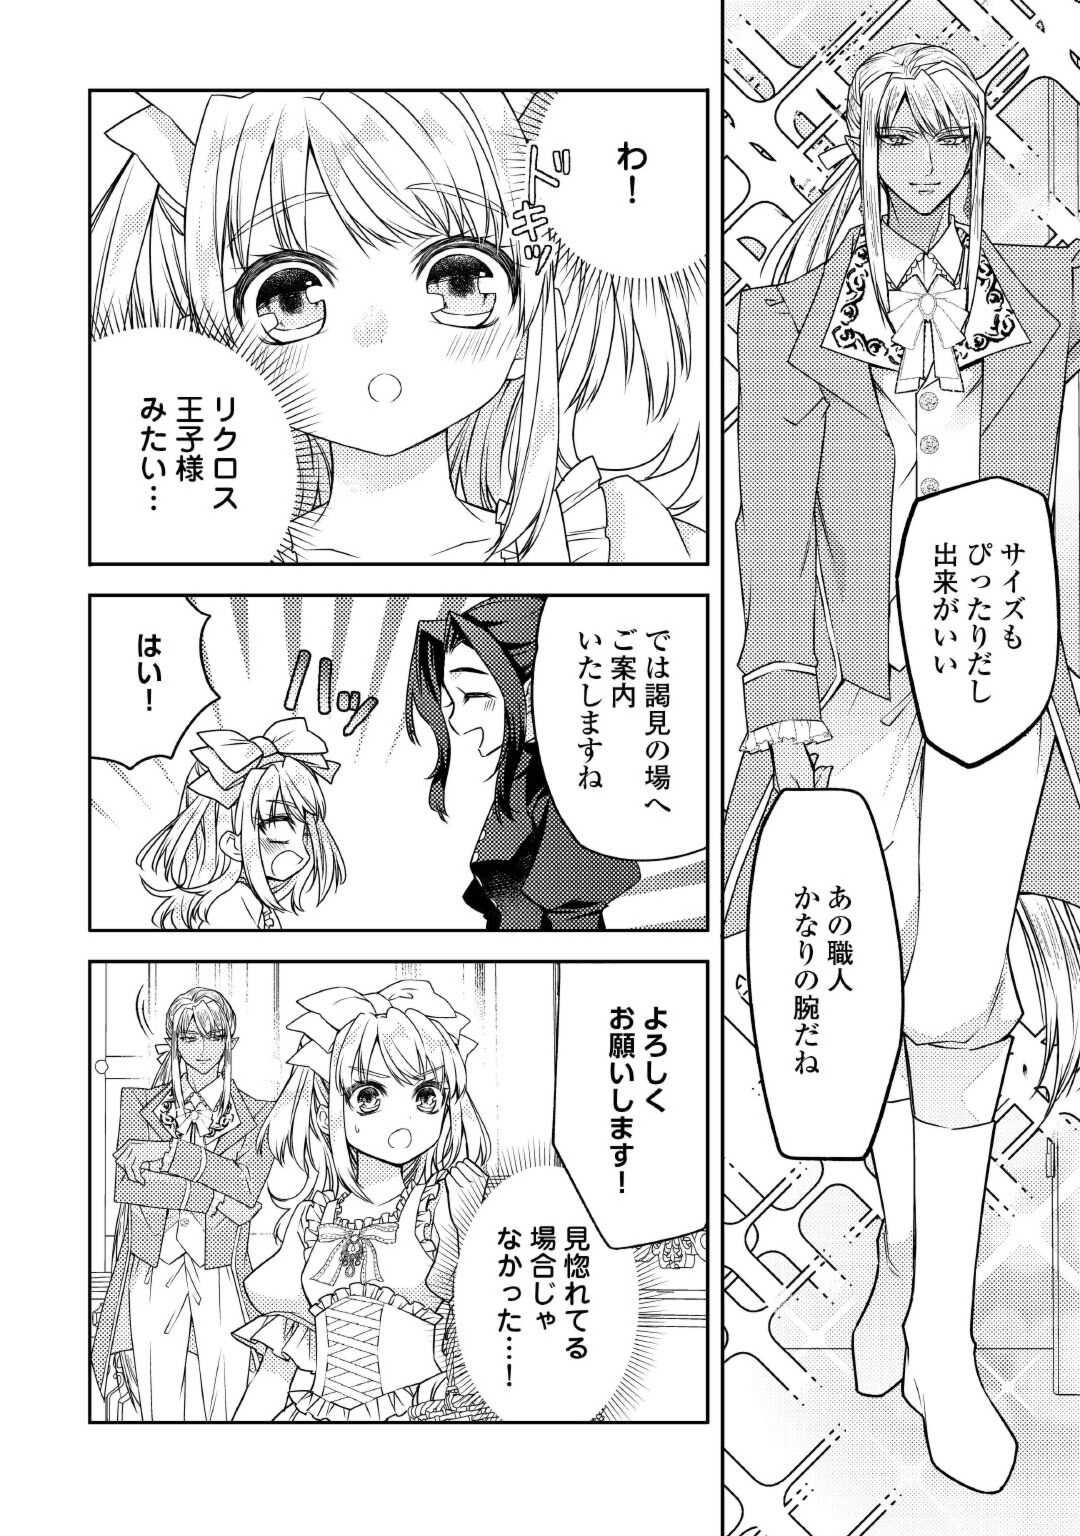 Toaru Chisana Mura No Chi Tona Tanya Ya San - Chapter 19 - Page 2